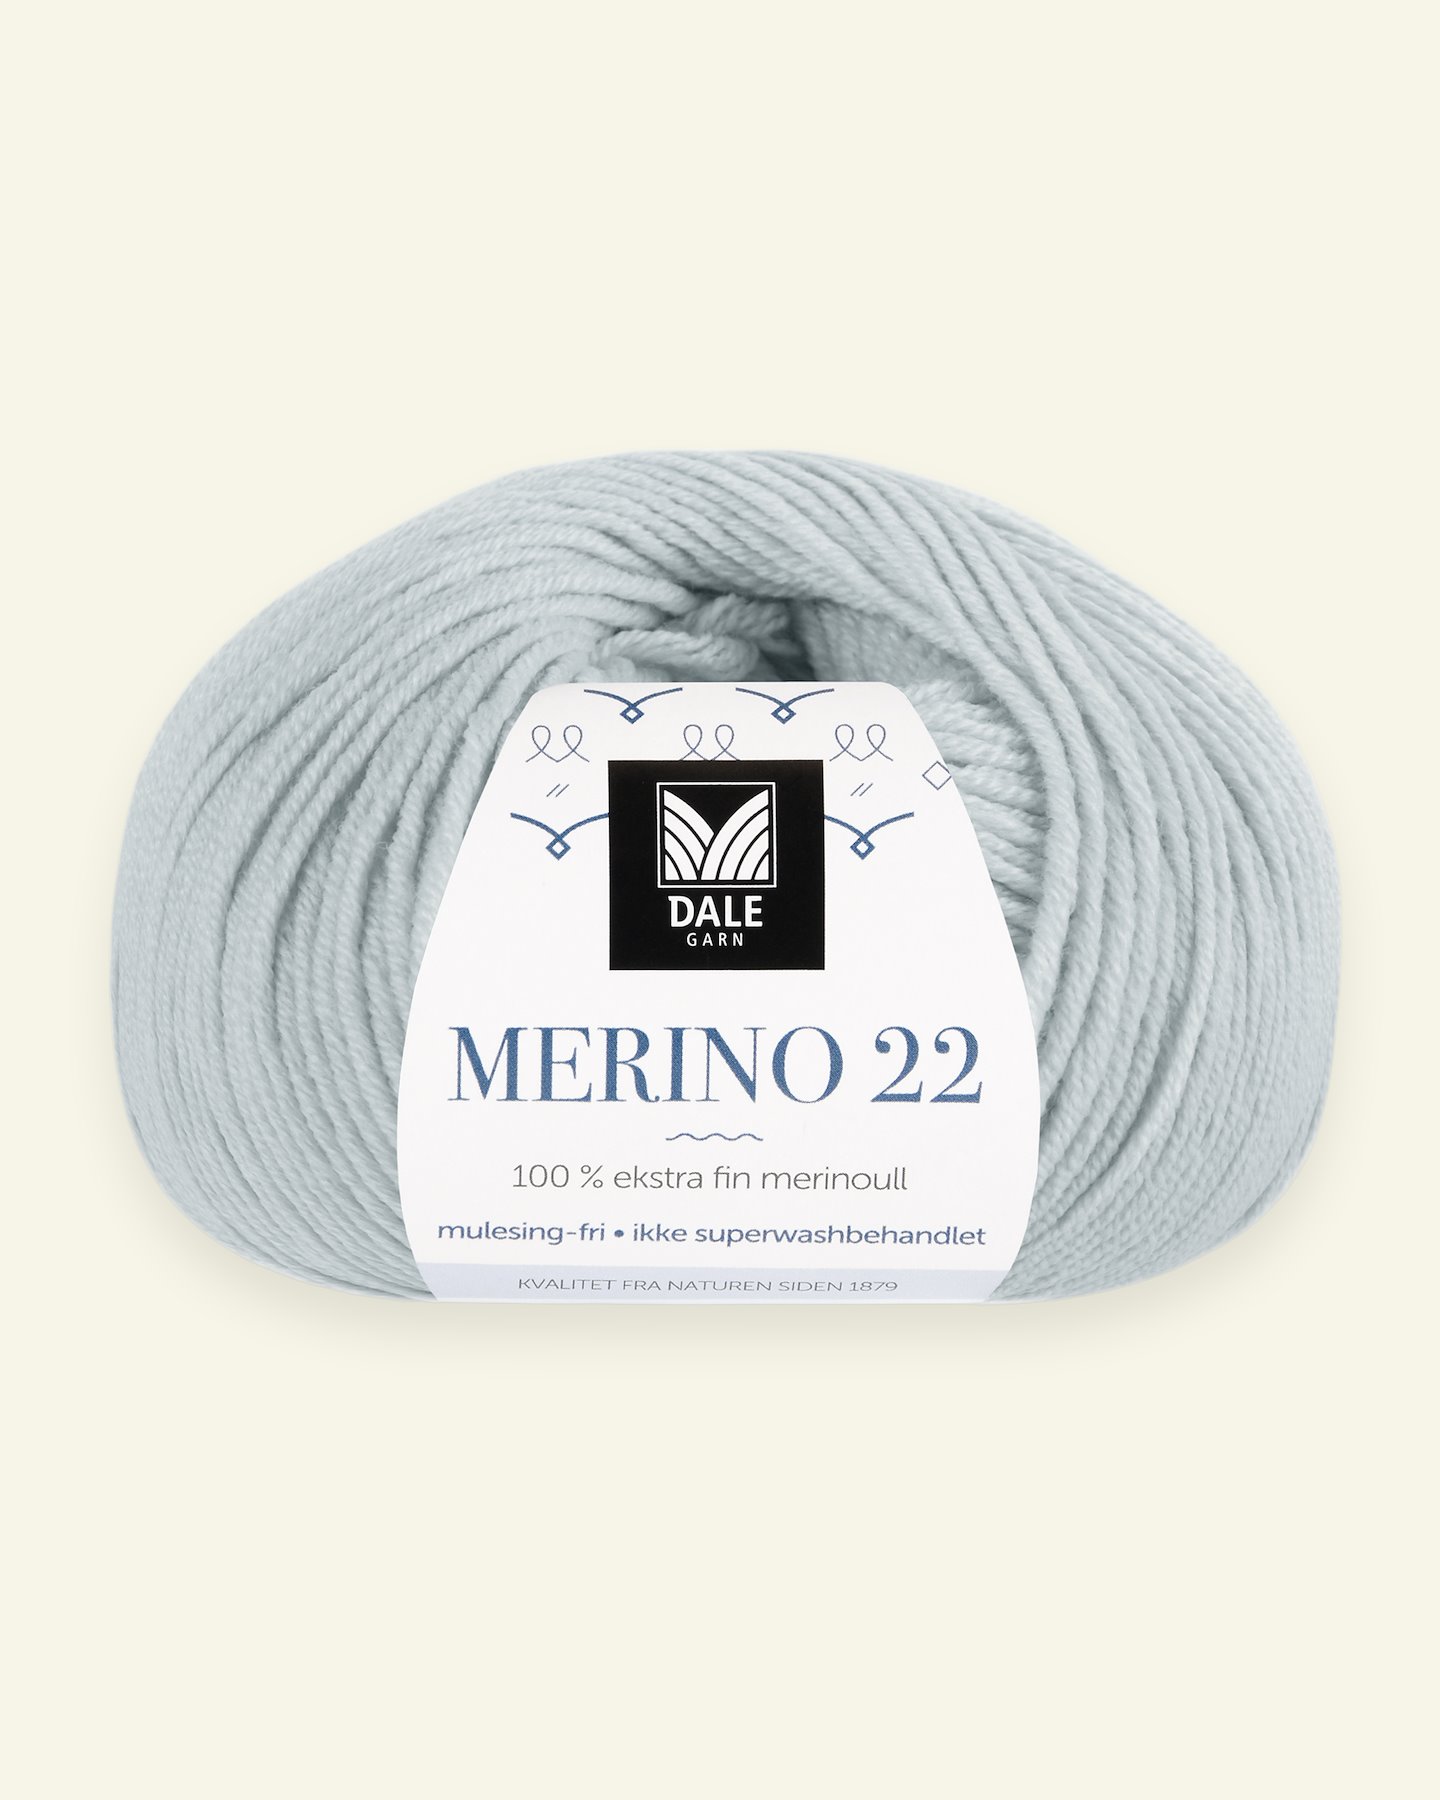 Dale Garn, 100% extra fine merino wool yarn, "Merino 22", dusty light blue 90000373_pack